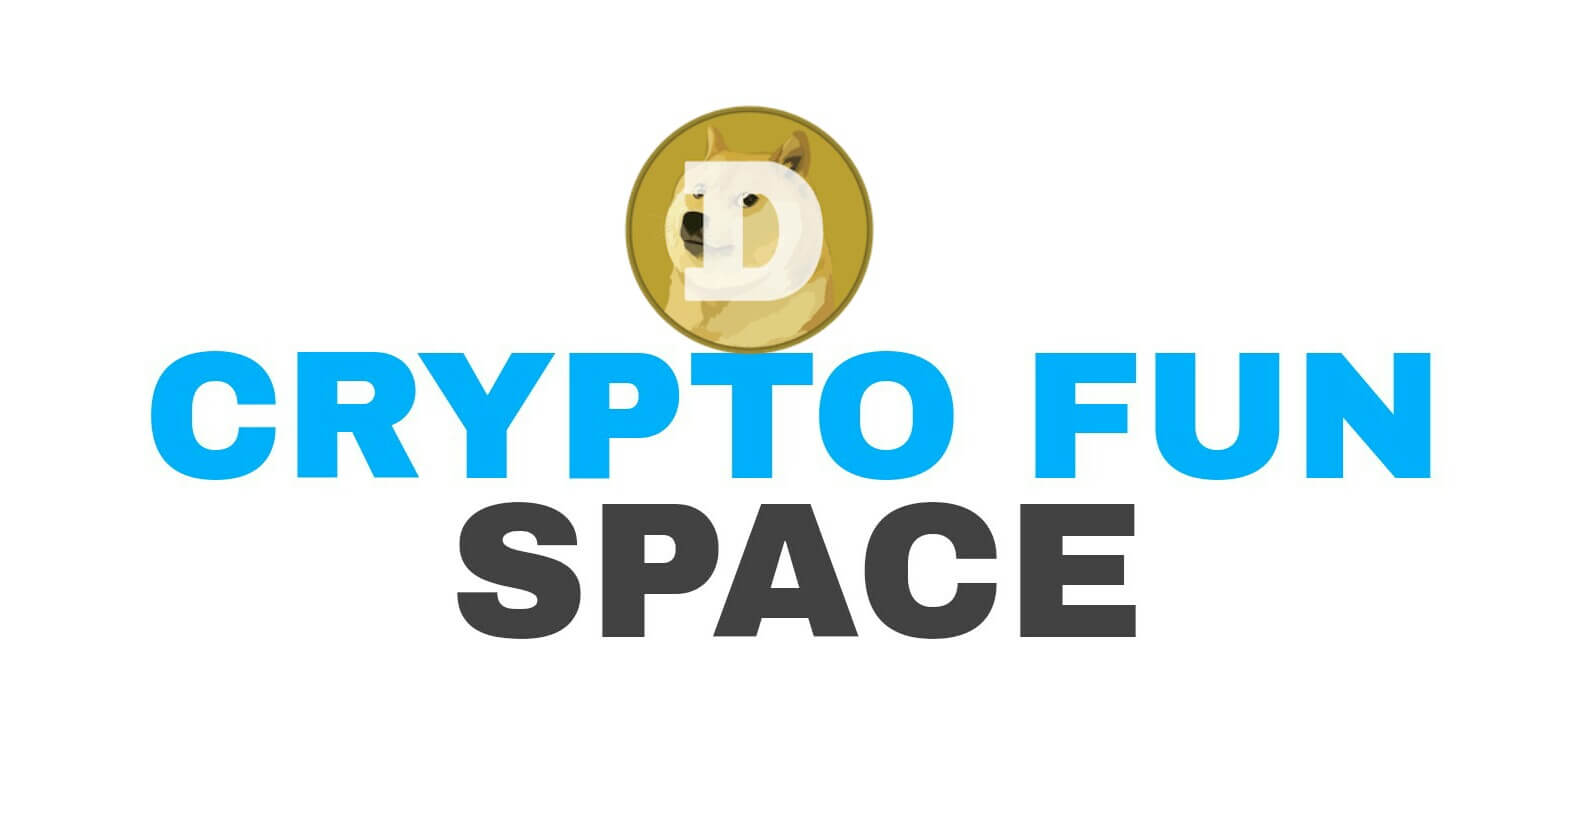 Diartikel ke tiga puluh empat ini, Saya akan memberikan Tutorial Cara bermain disitus Cryptofun.space hingga mendapatkan Dogecoin secara gratis tanpa Deposit.